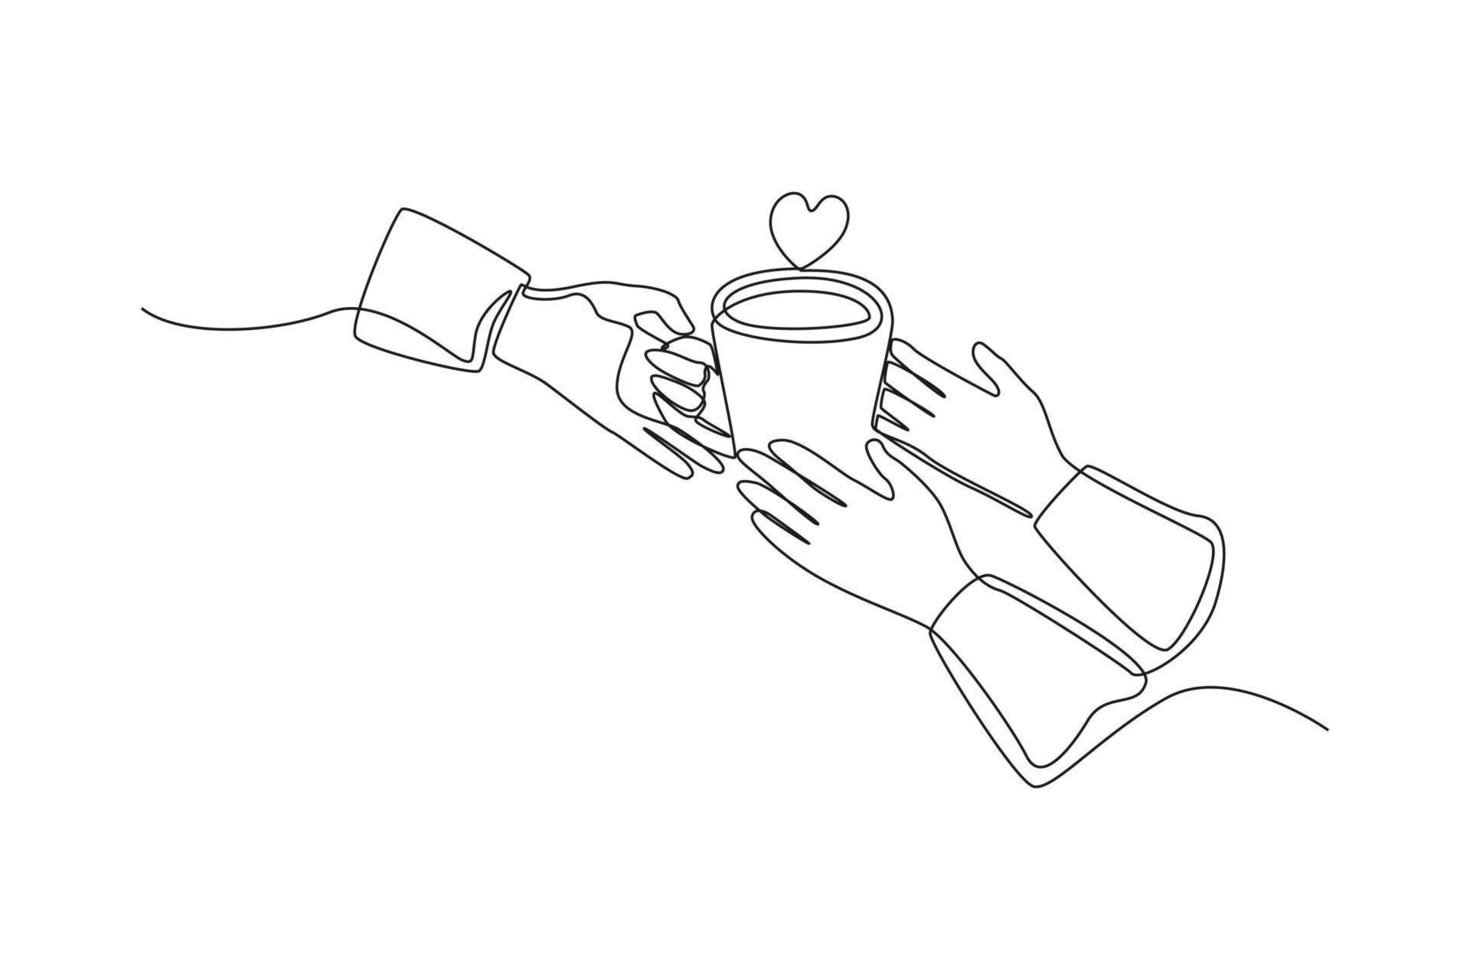 kontinuerlig en rad ritning hand ger en kopp kaffe i handen av en annan person. internationell kaffedag koncept. enda rad rita design vektorgrafisk illustration. vektor